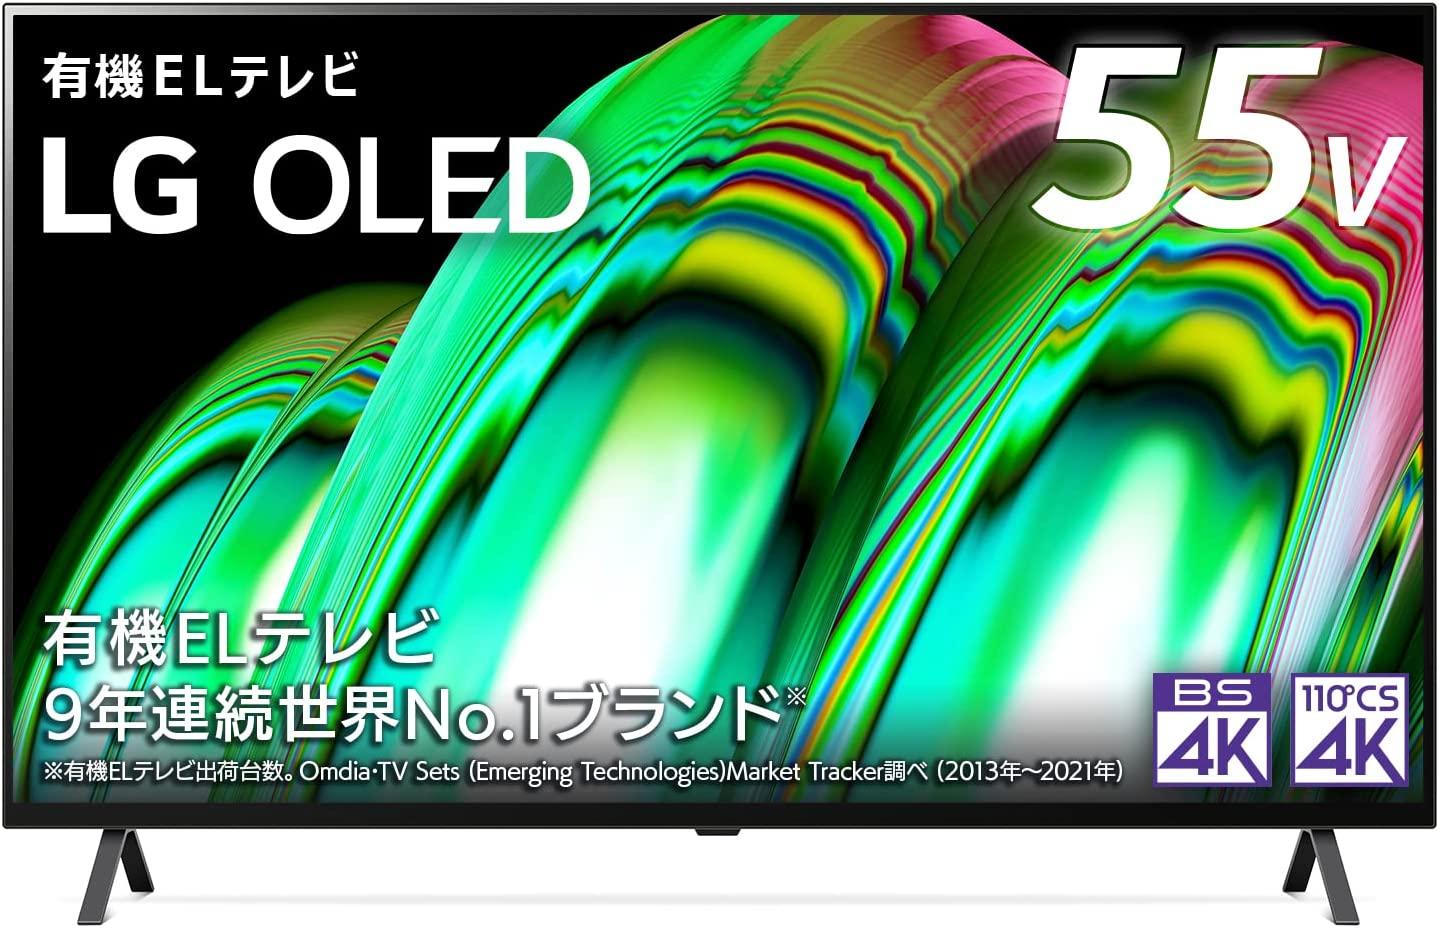 これが初売りの威力か…！ LGの55型4K有機ELテレビが10万円切ってる 